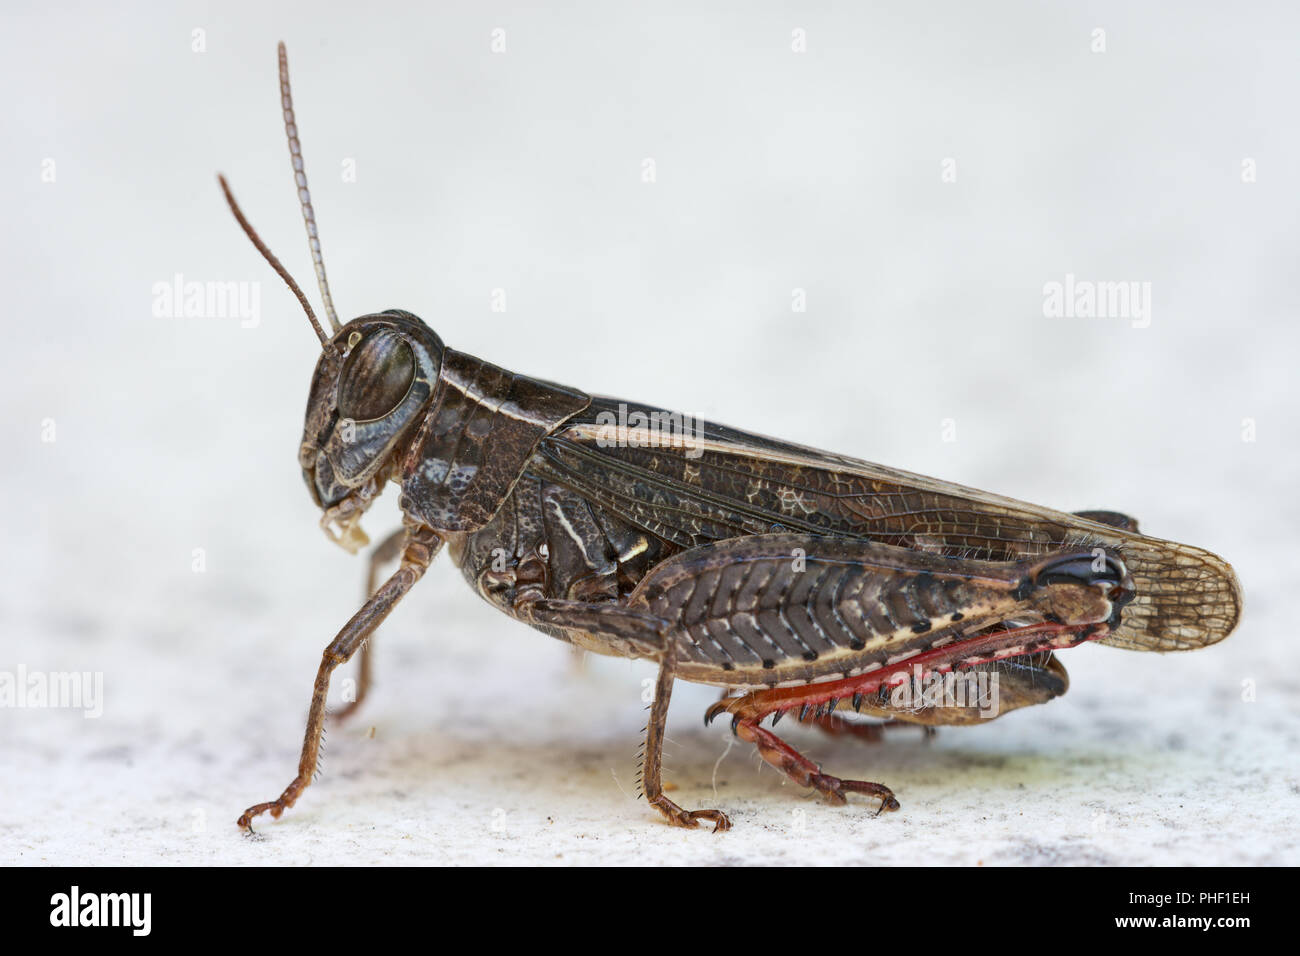 Calliptamus italicus, the Italian locust, close-up species of short-horned grasshopper. Stock Photo